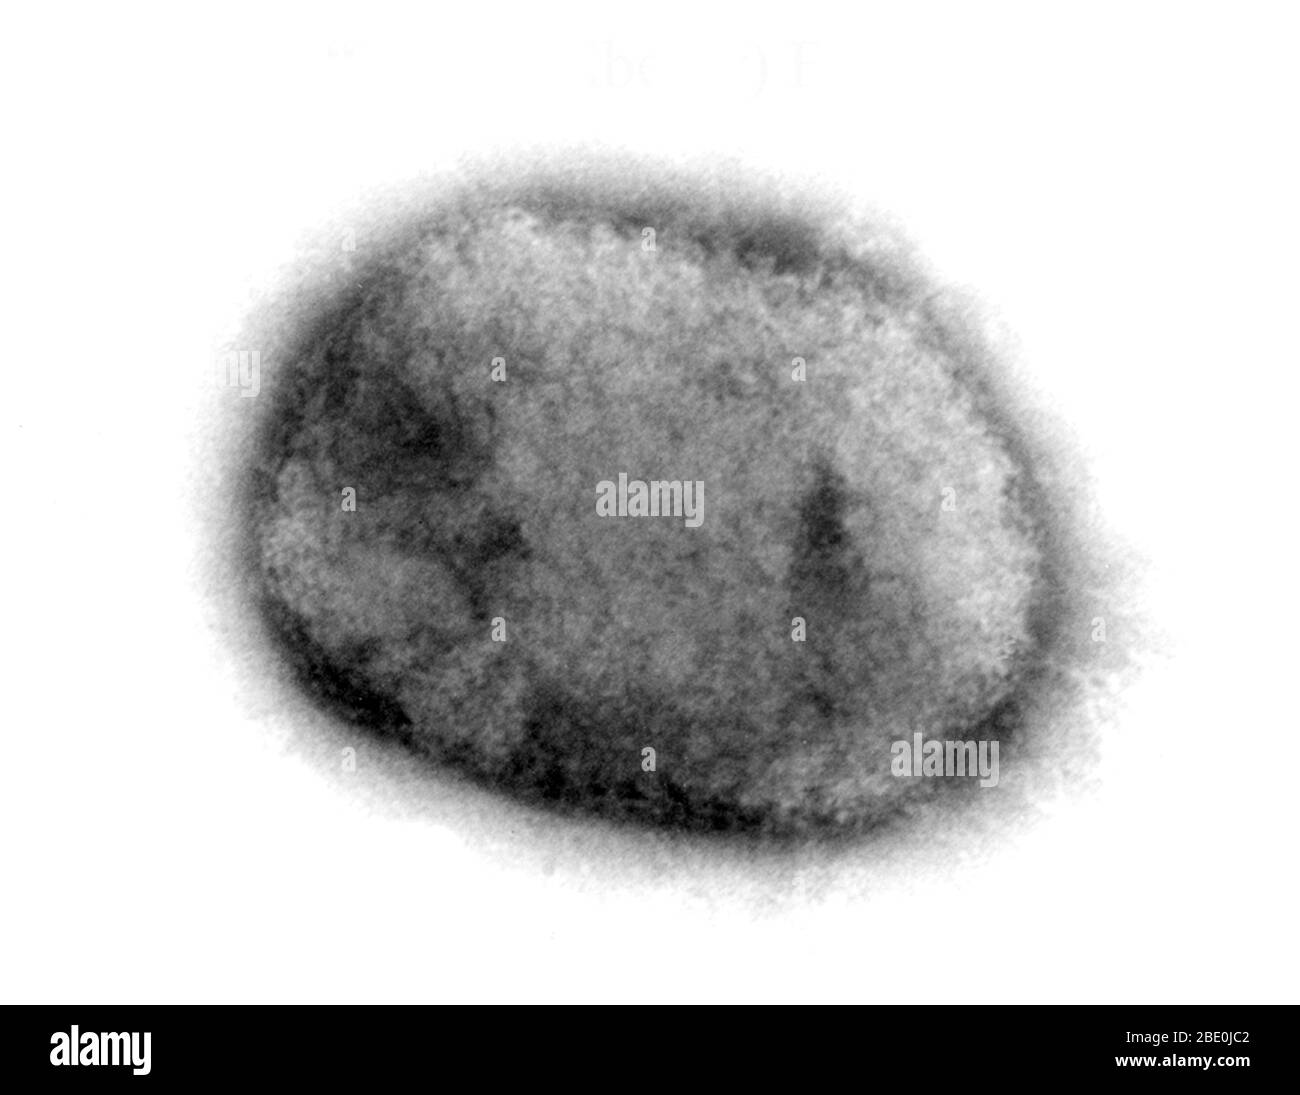 Negativ-gefärbte Transmission Electron Micrograph (TEM), die das gemauerte Monkeypox-Virus aus einer Zellkultur demonstriert. Die Oberfläche des Maulbeervirions ist mit kurzen, whorled Filamenten bedeckt. Monkeypox-Virus (MPV) ist eine doppelsträngige DNA, ein zoonotisches Virus und eine Art der Gattung Orthopoxvirus in der Familie Poxviridae. Es ist eines der menschlichen Orthopoxviren, die Variola (VARV), Cowpox (CPX) und Vaccinia (VACV) Viren umfasst. Aber es ist kein direkter Vorfahre oder direkter Nachkomme des Variolavirus, das Pocken verursacht. Das Monkeypox-Virus verursacht eine Krankheit, die SMA ähnlich ist Stockfoto